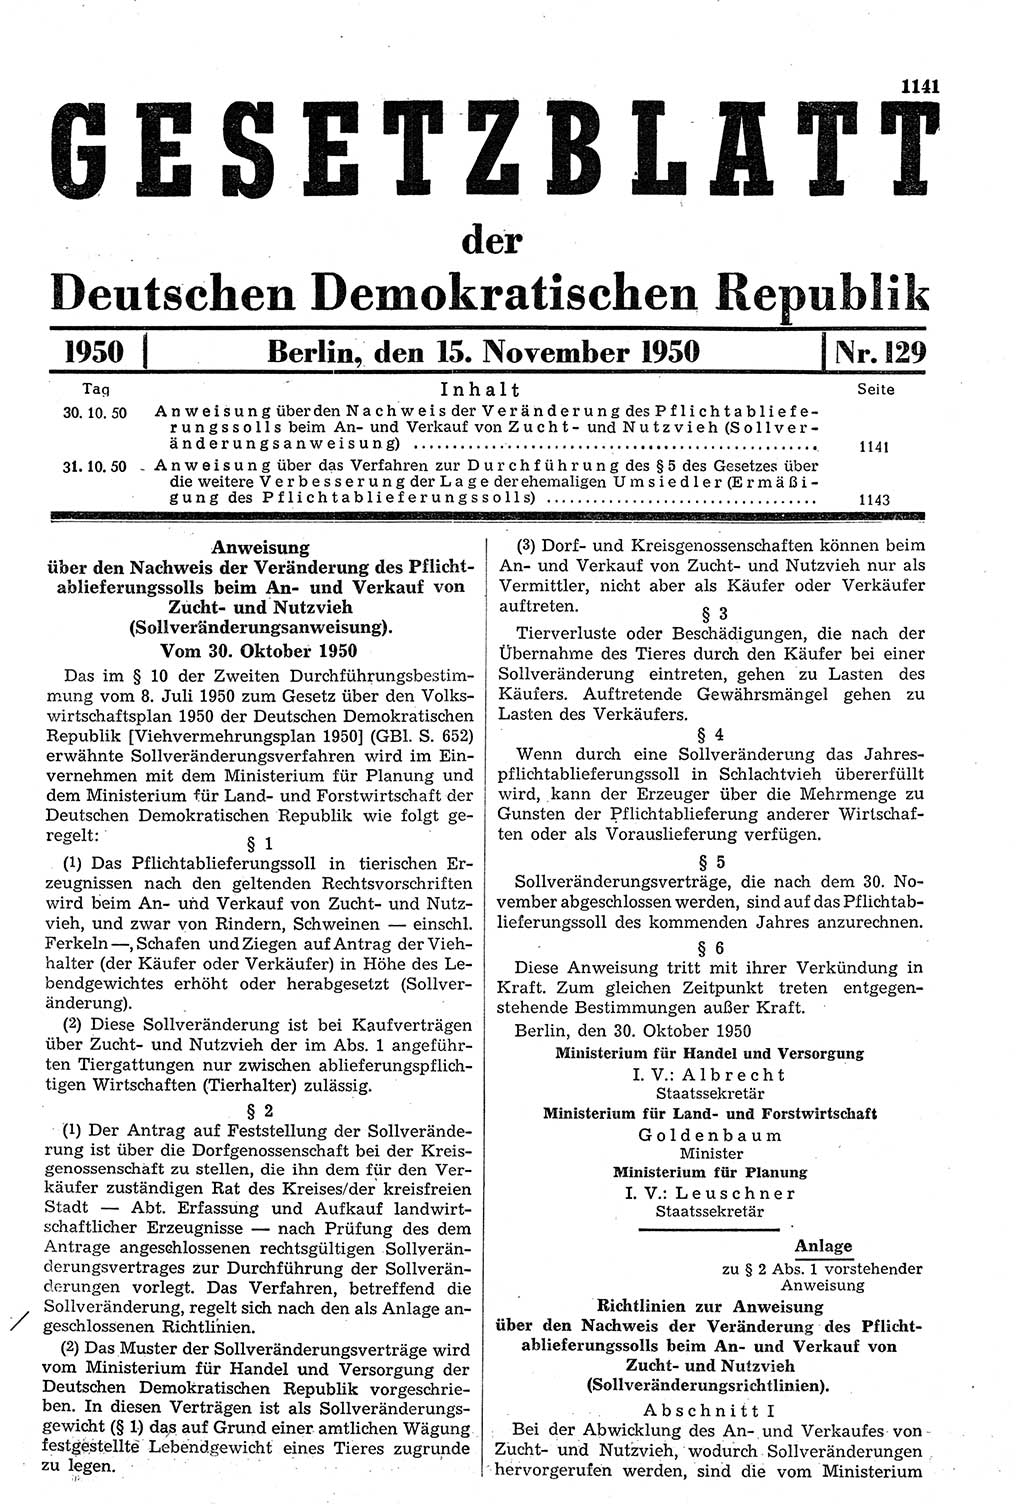 Gesetzblatt (GBl.) der Deutschen Demokratischen Republik (DDR) 1950, Seite 1141 (GBl. DDR 1950, S. 1141)